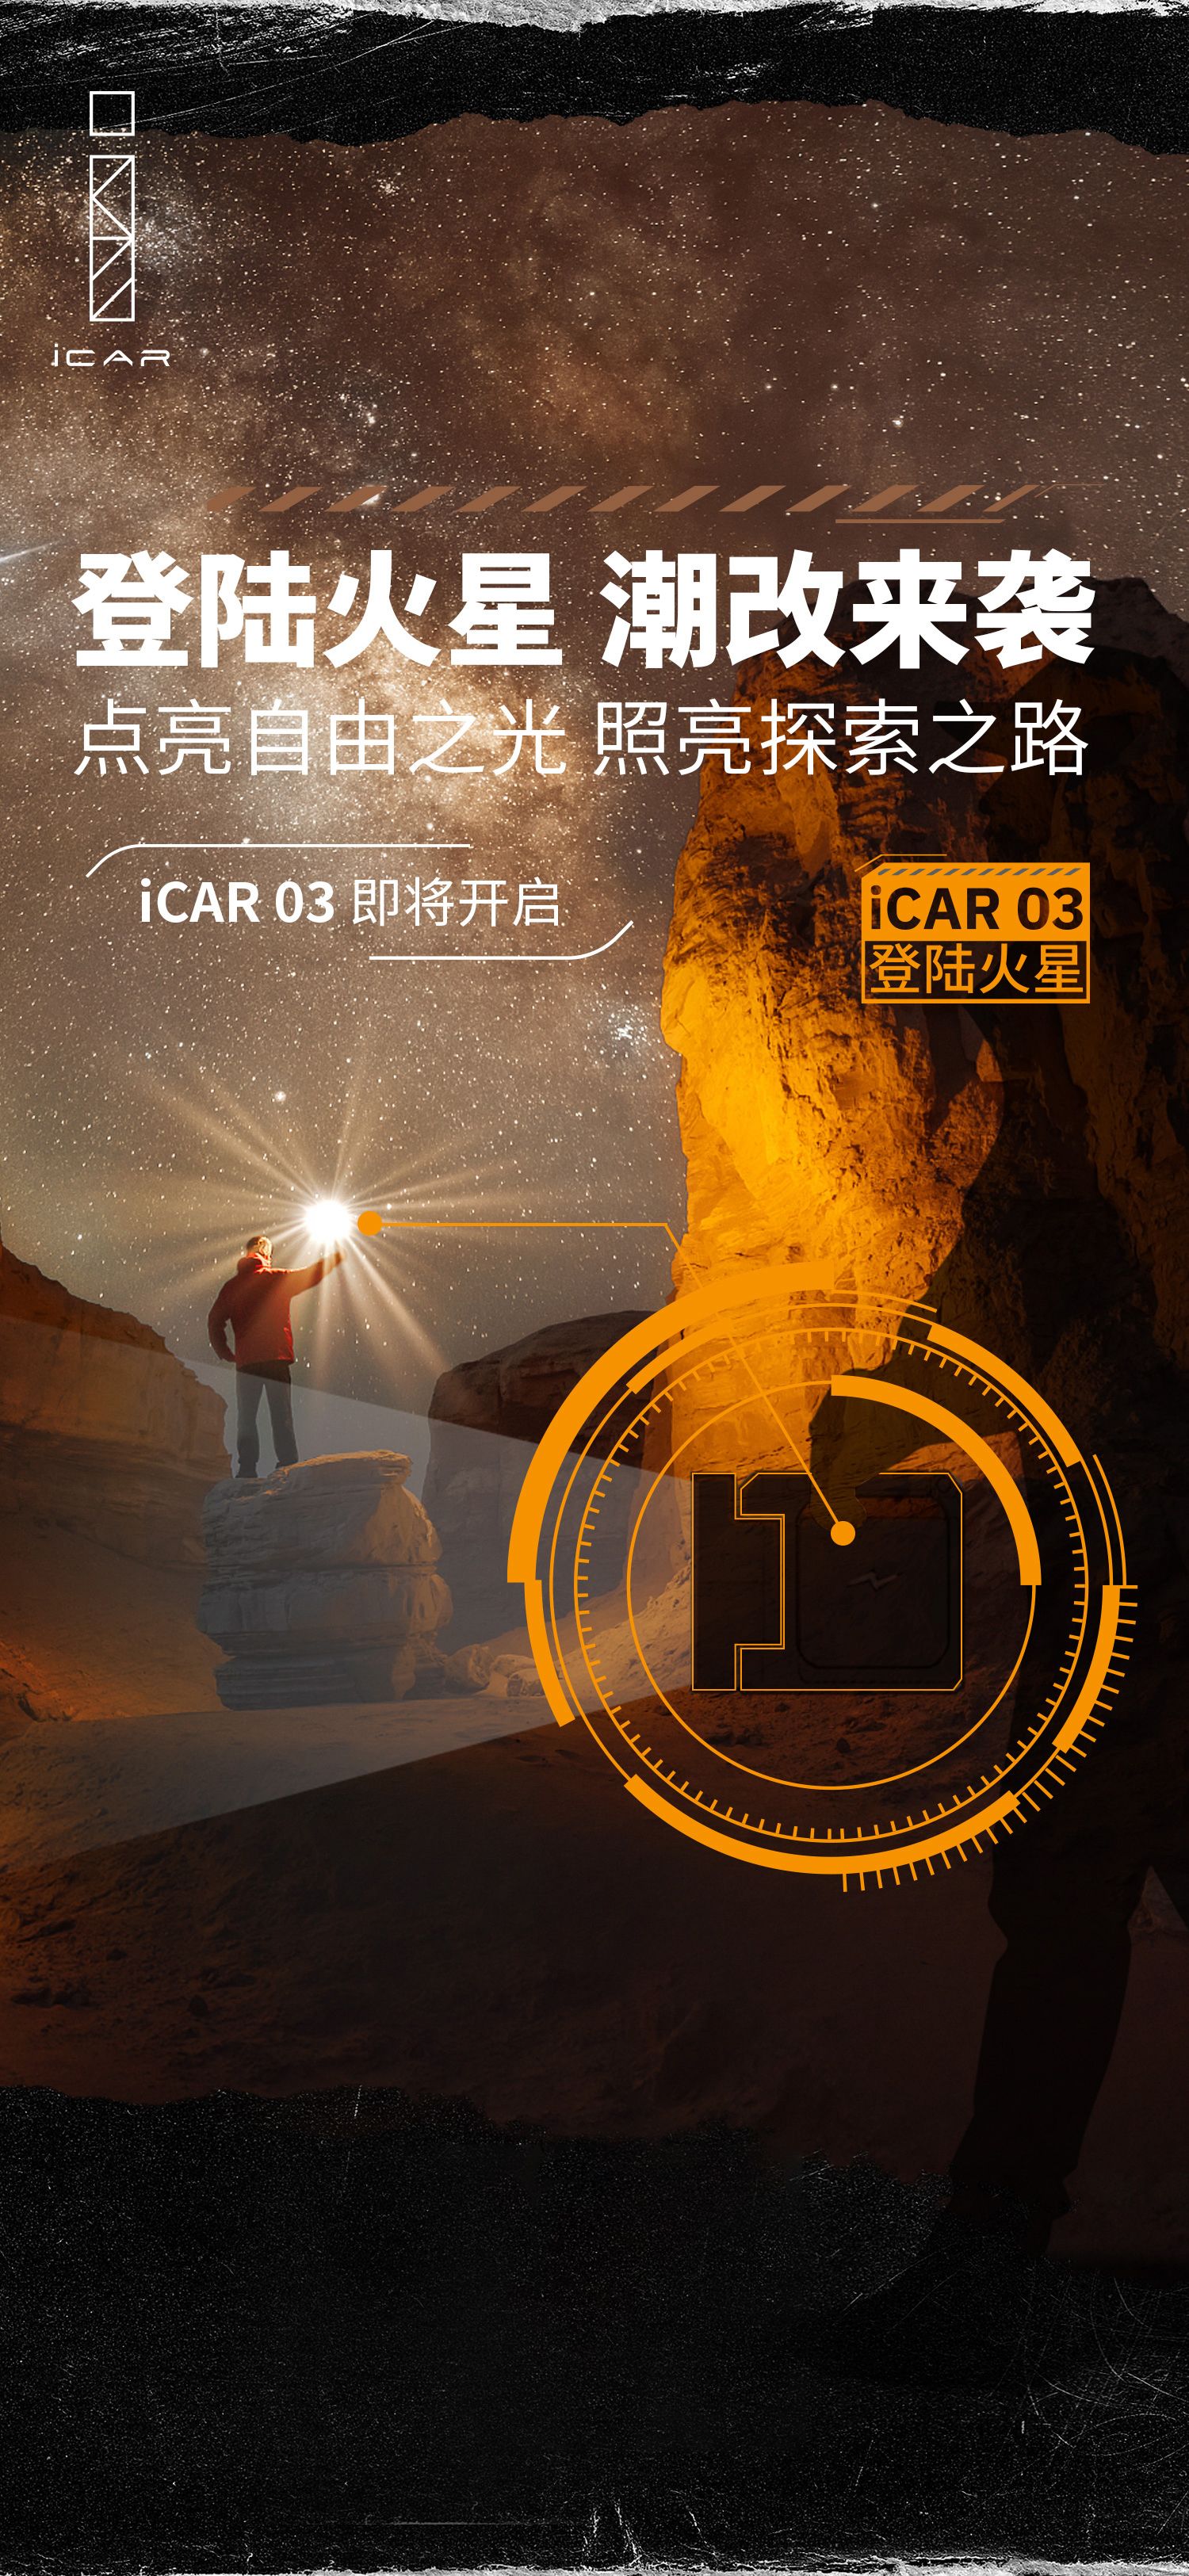 以自由之光照亮探索之路“iCAR 03 登陆火星”正式开启